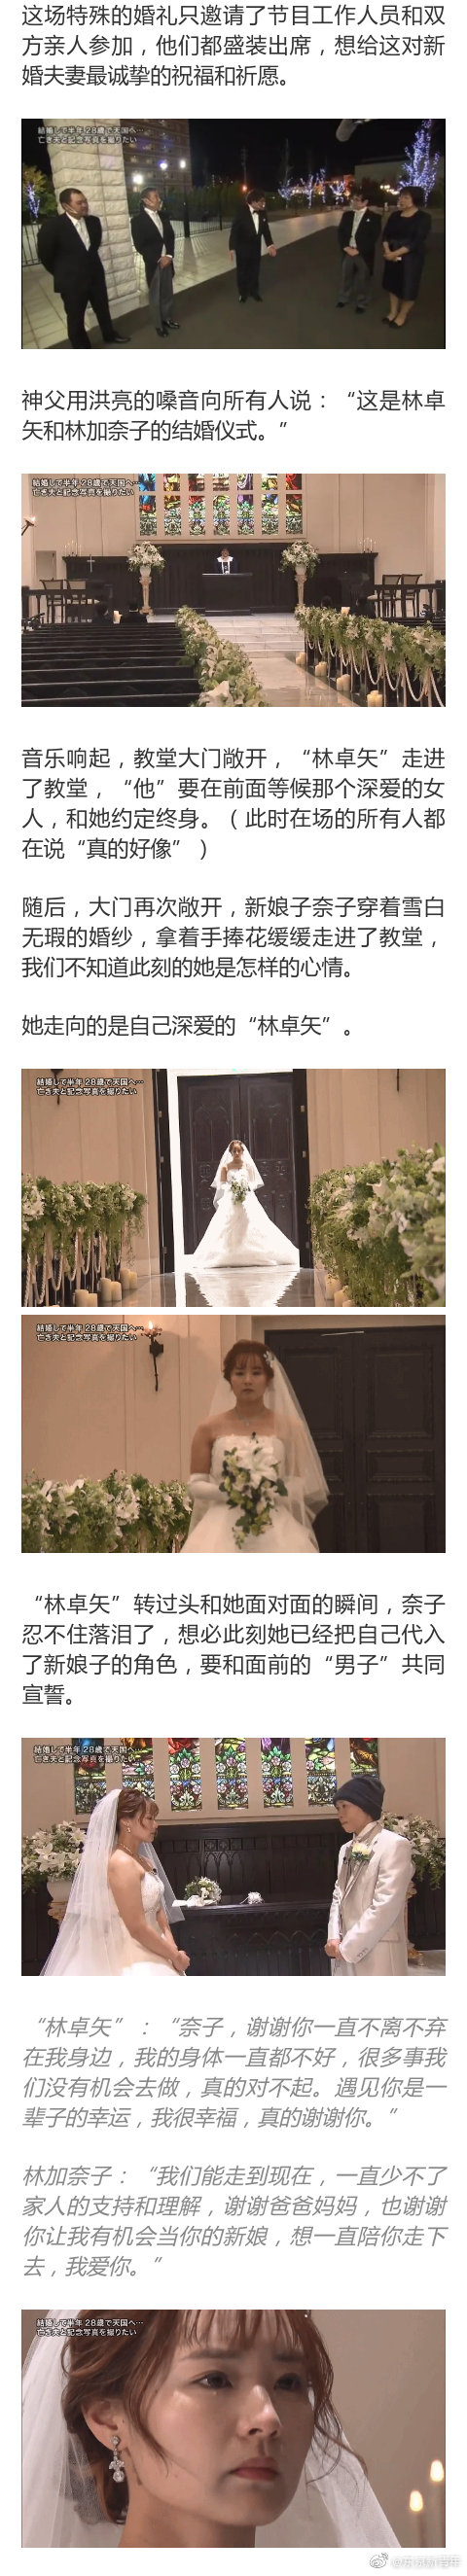 日本女生嫁给28岁绝症男子 婚后仅半年阴阳相隔